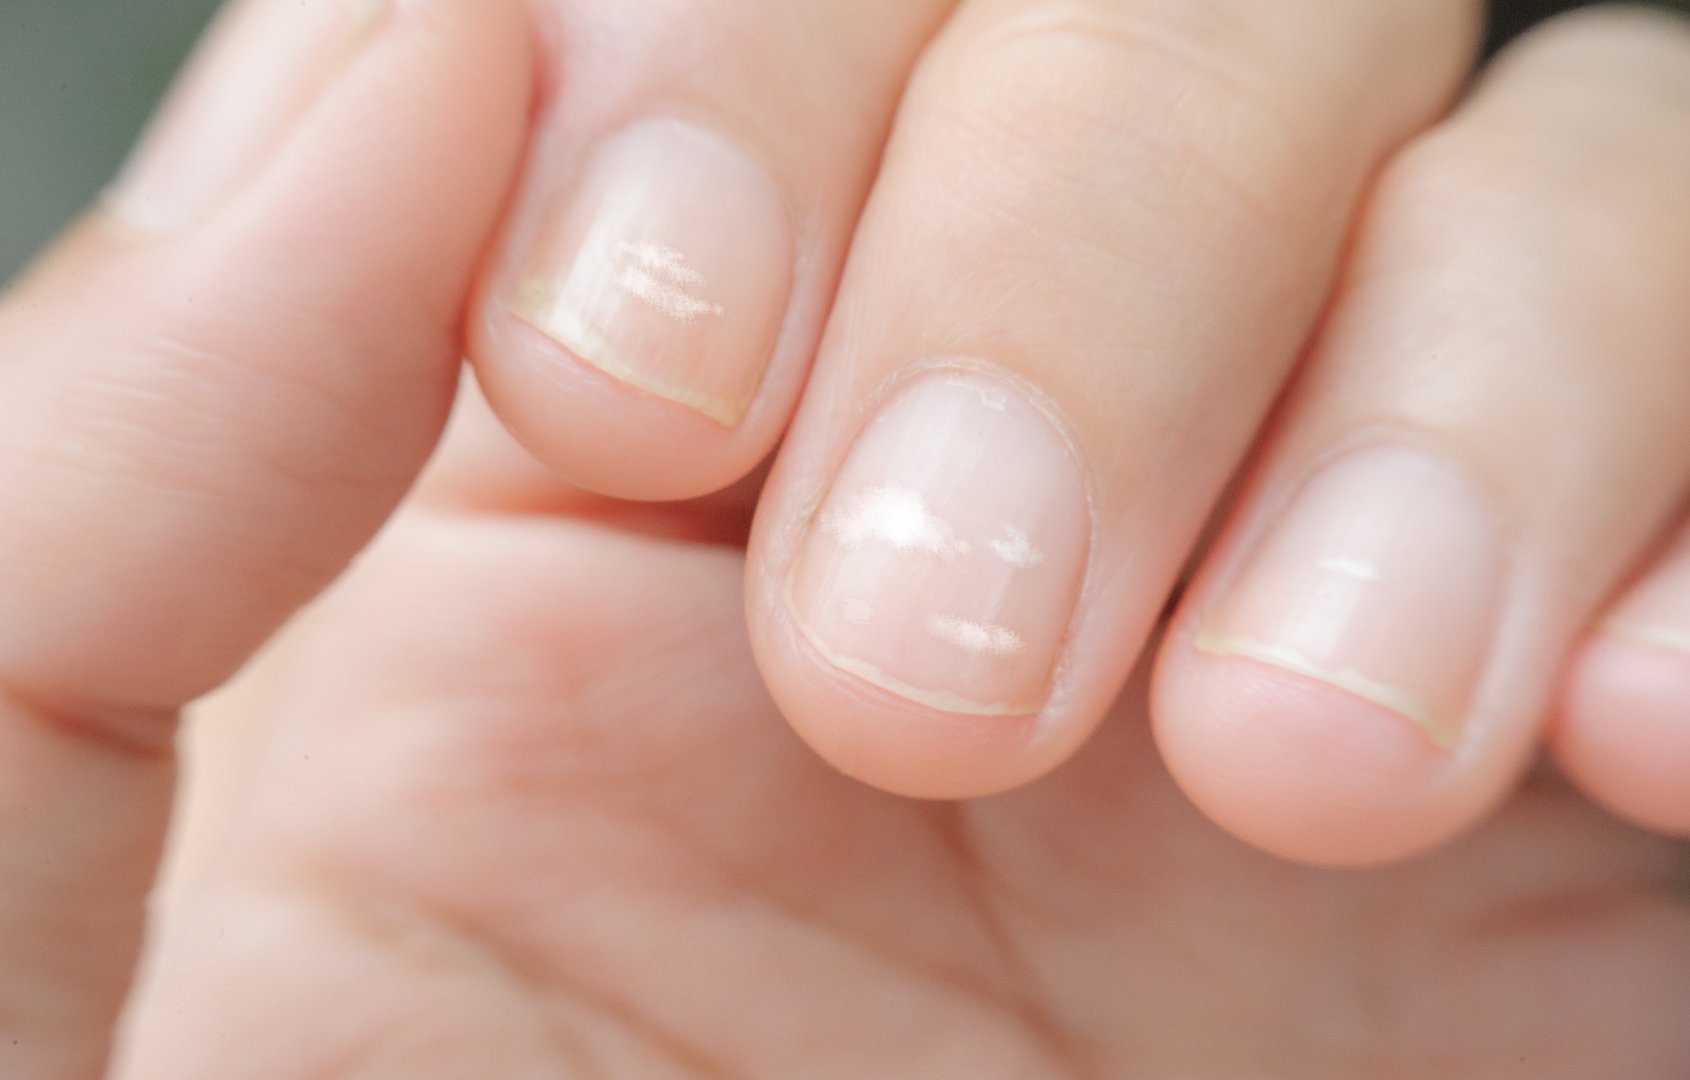 bruzdy na paznokciach jakie sa przyczyny pofalowanej plytki paznokcia wylecz to nicole diary stamping plates matte nail art